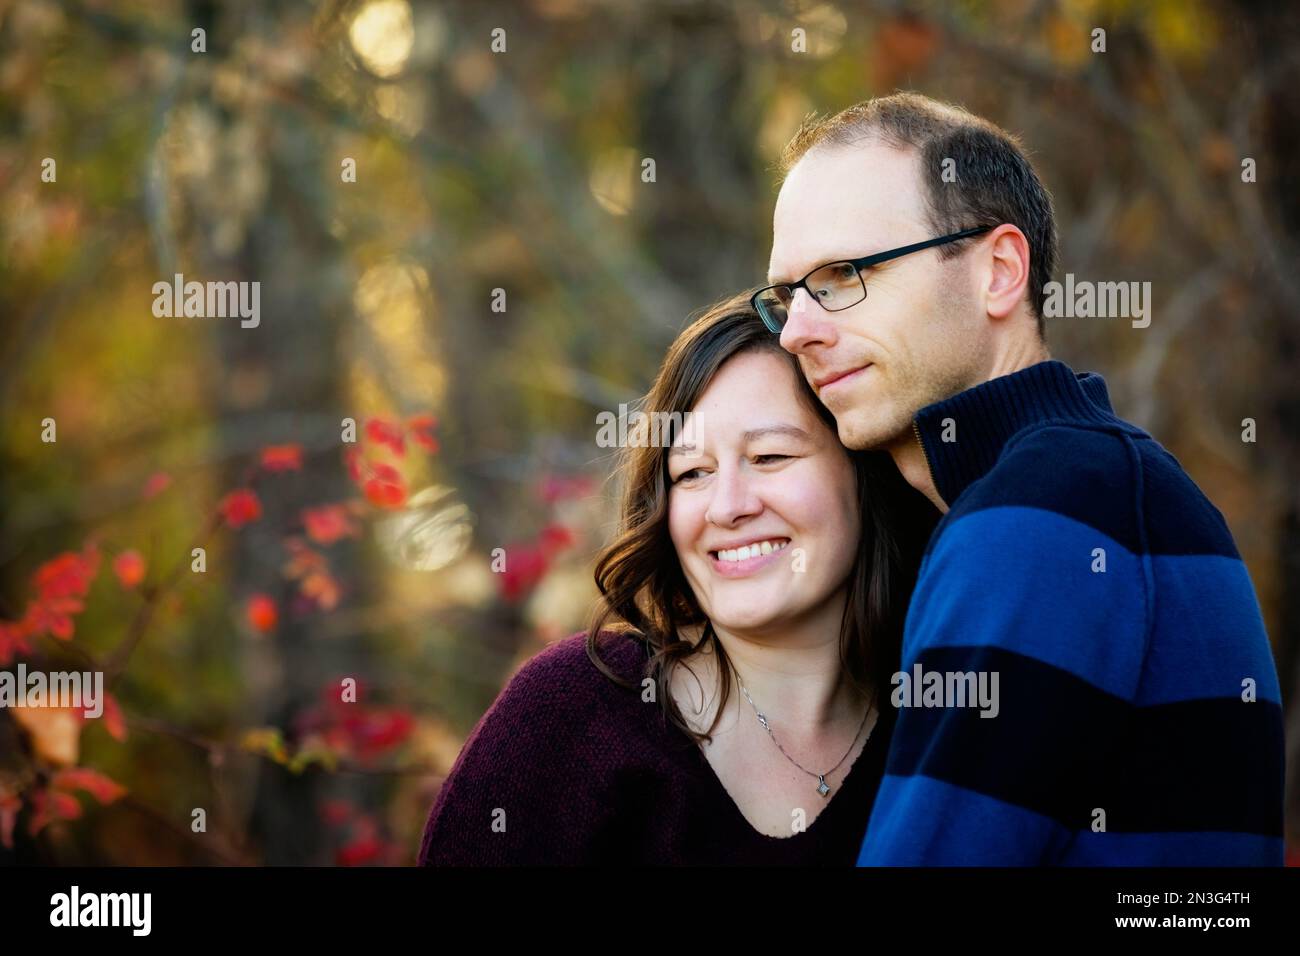 Portrait d'un couple marié mature passant du temps ensemble de qualité à l'extérieur dans un parc de la ville pendant la saison d'automne; St. Albert, Alberta, Canada Banque D'Images